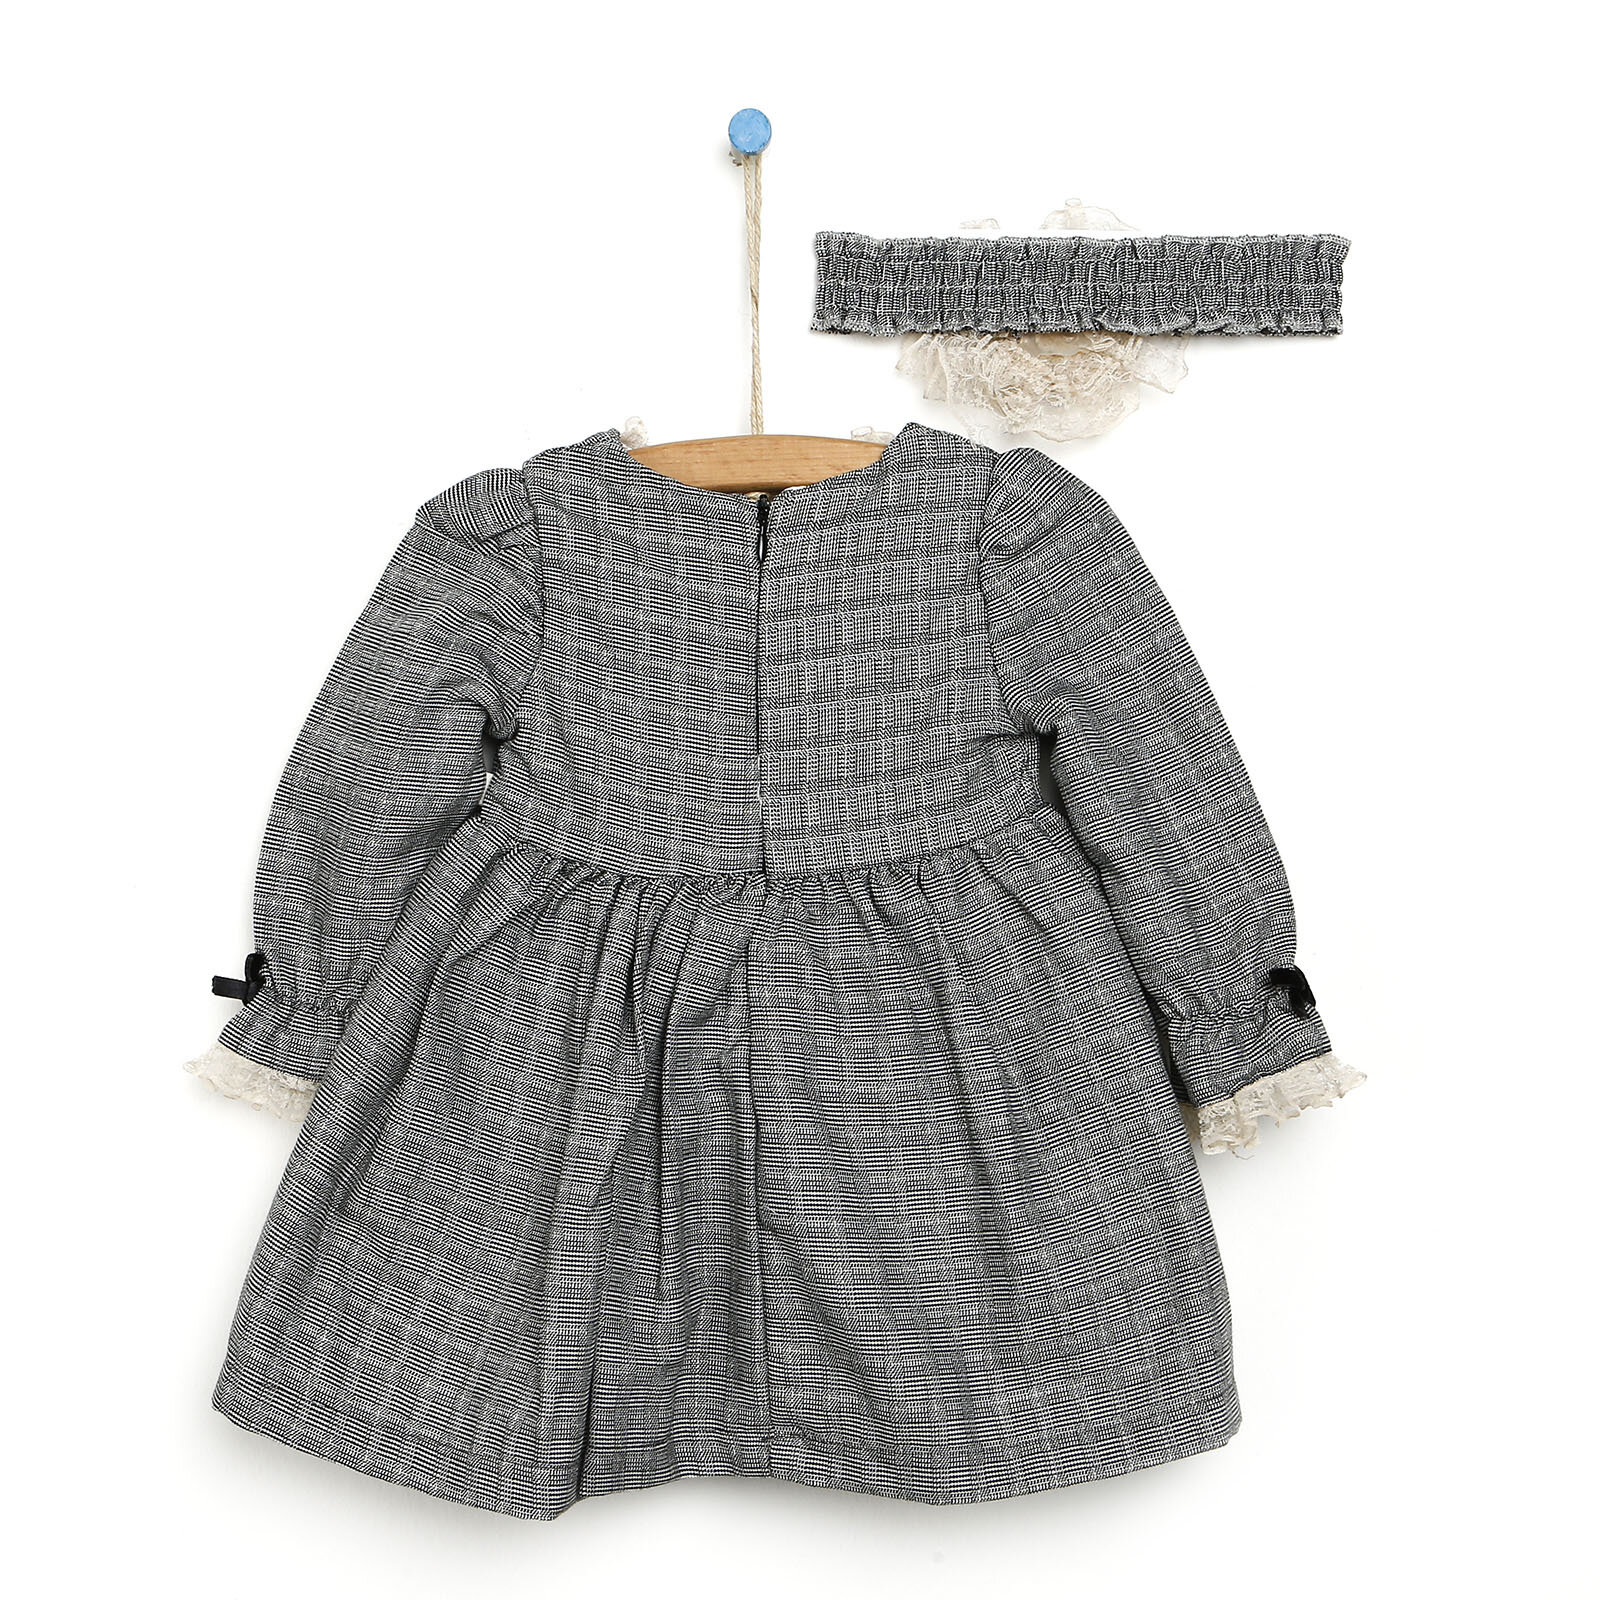 Miomi Windy Fırfırlı Düğmeli Saç Bantlı Kız Bebek Elbise